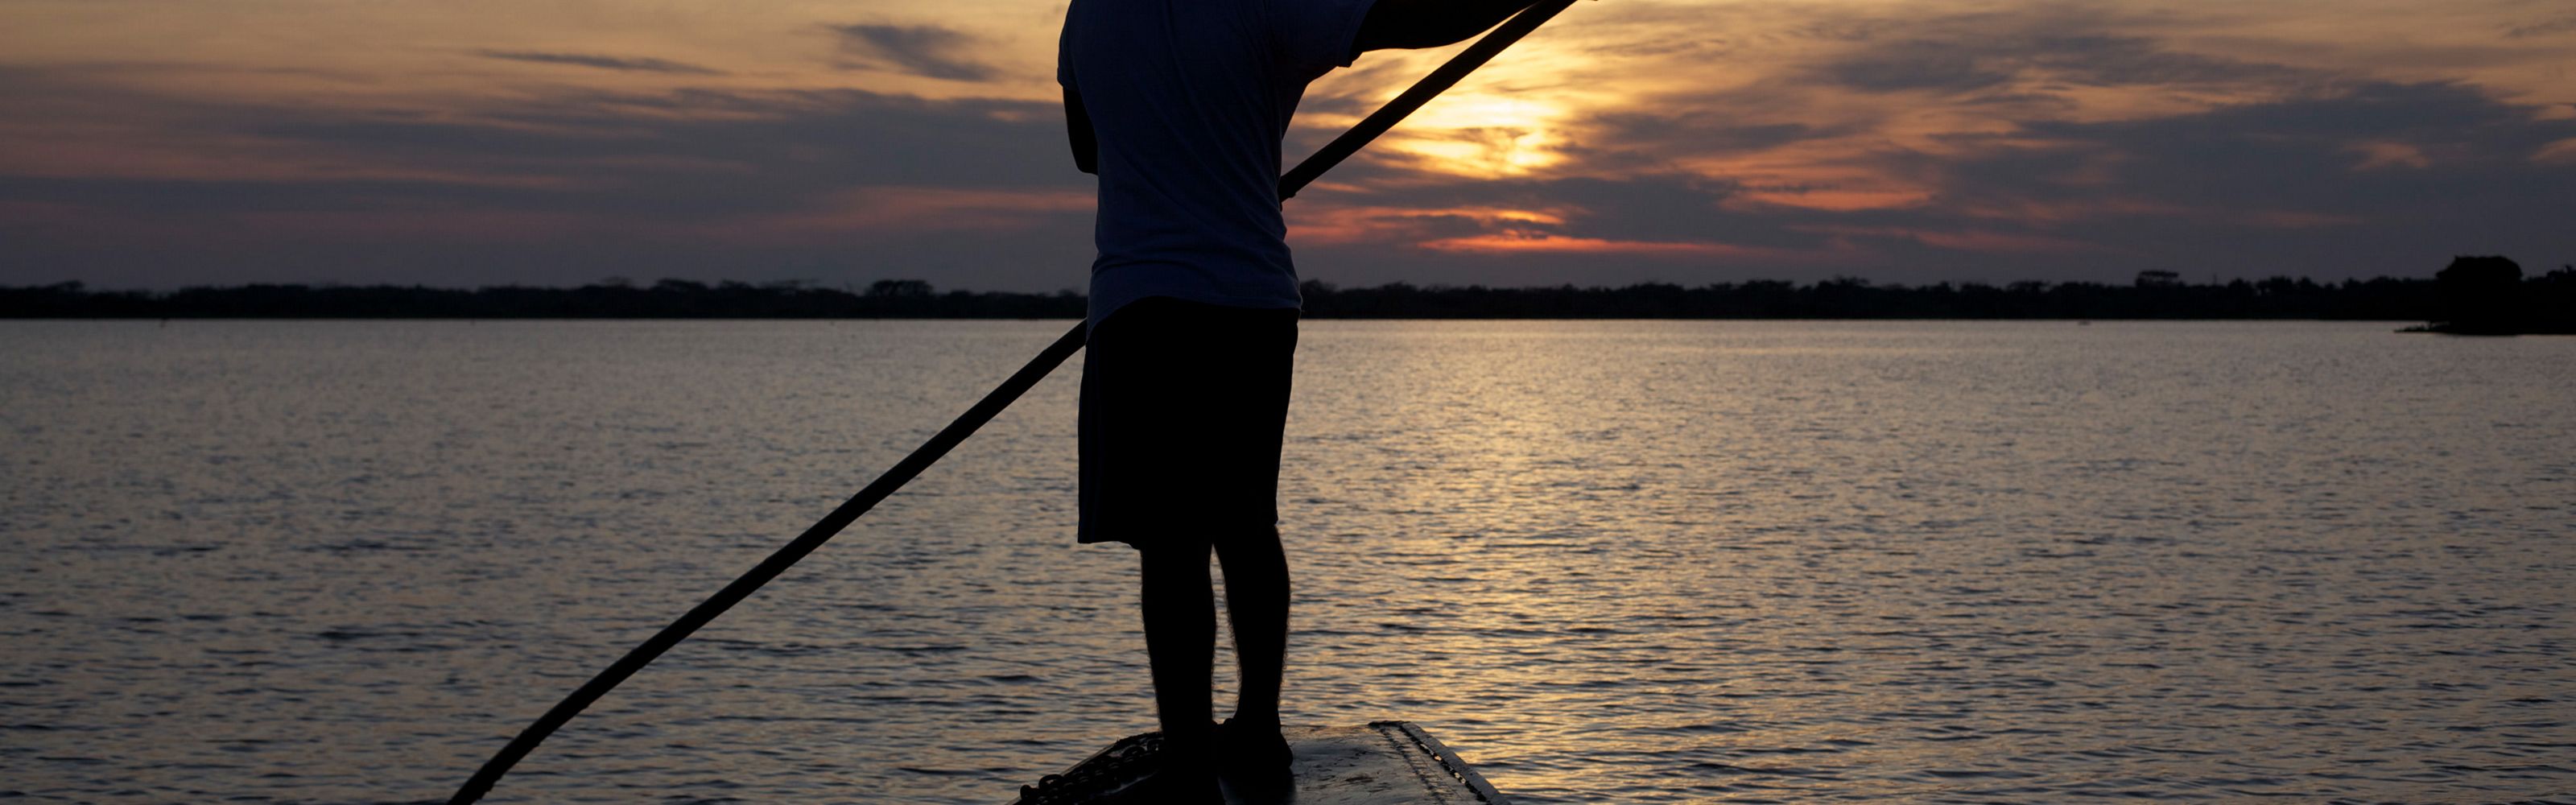 Fisherman sailing along the Magdalena River